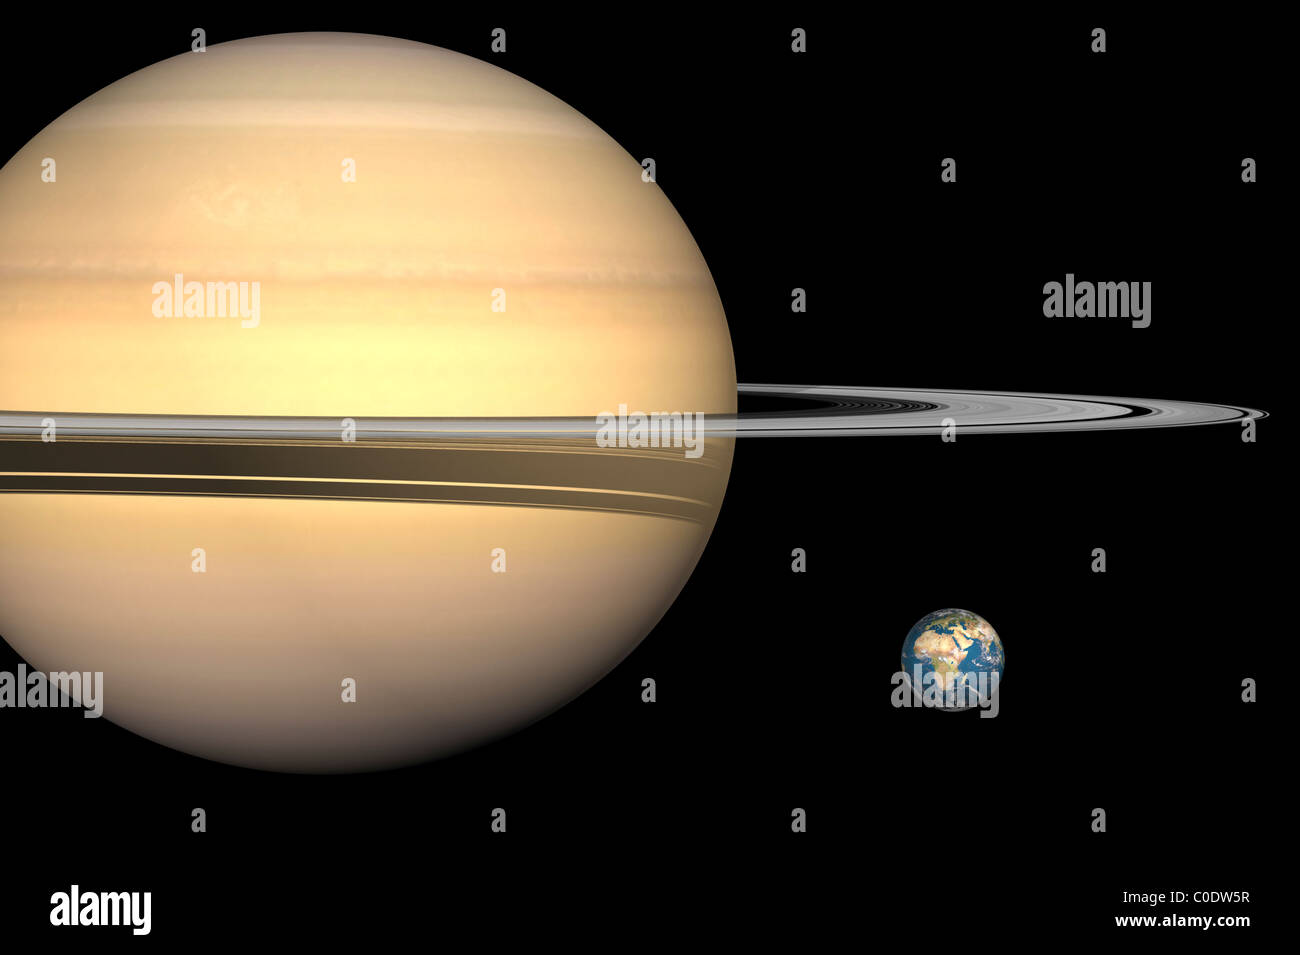 Illustration de Saturne et de la Terre à l'échelle. Banque D'Images